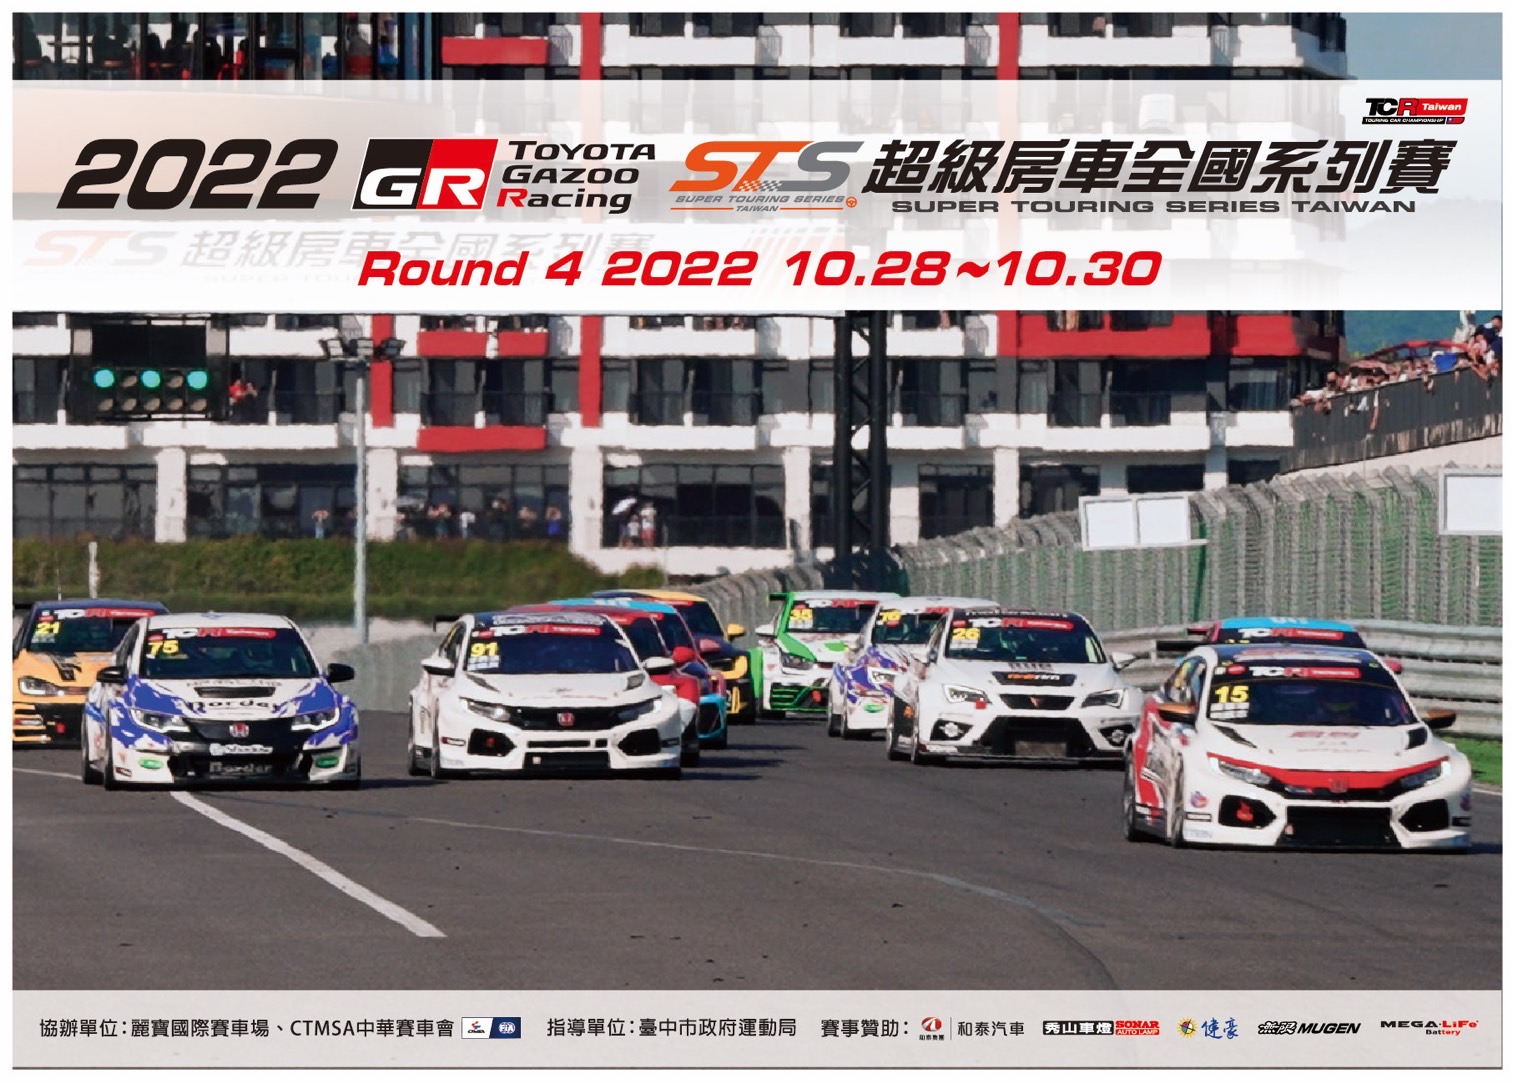 虎年壓軸大戲  TOYOTA GAZOO Racing冠名贊助2022 STS超級房車全國系列賽最終站